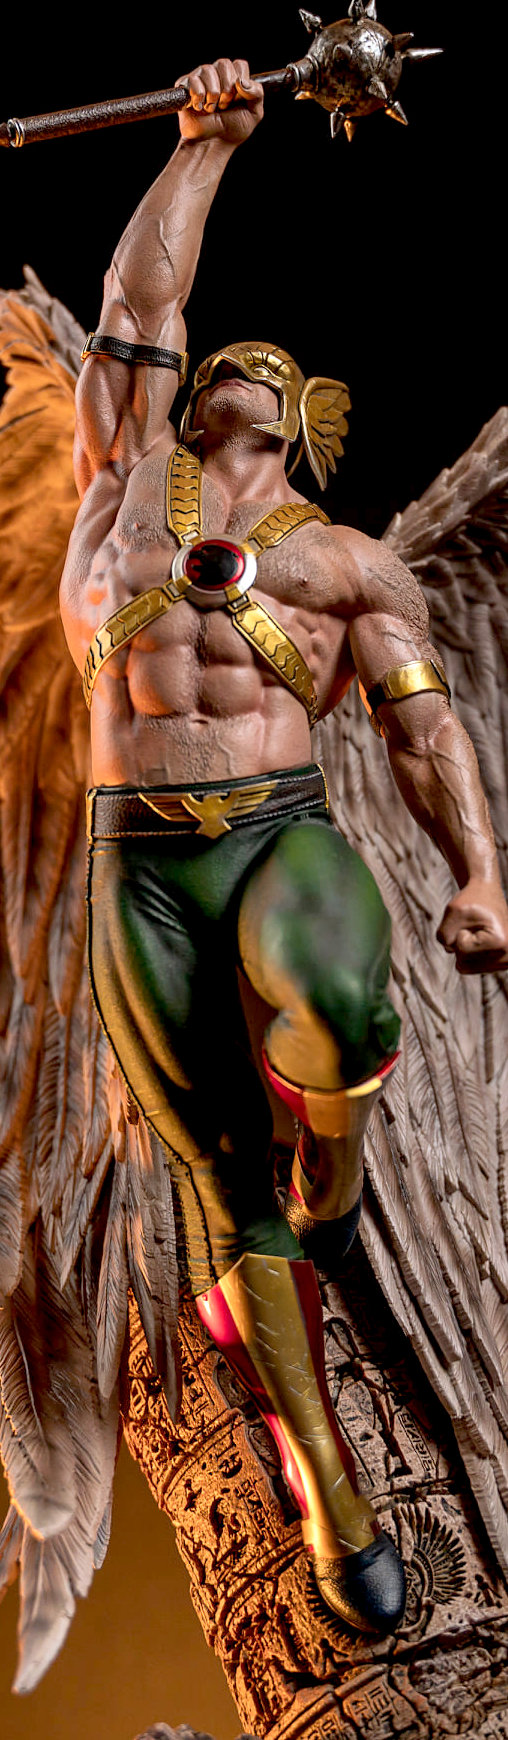 Justice League: Hawkman - Rebirth, Statue ... https://spaceart.de/produkte/jlg001-justice-league-hawkman-rebirth-statue-xm-studios-xm100007msg-0735850680767-spaceart.php